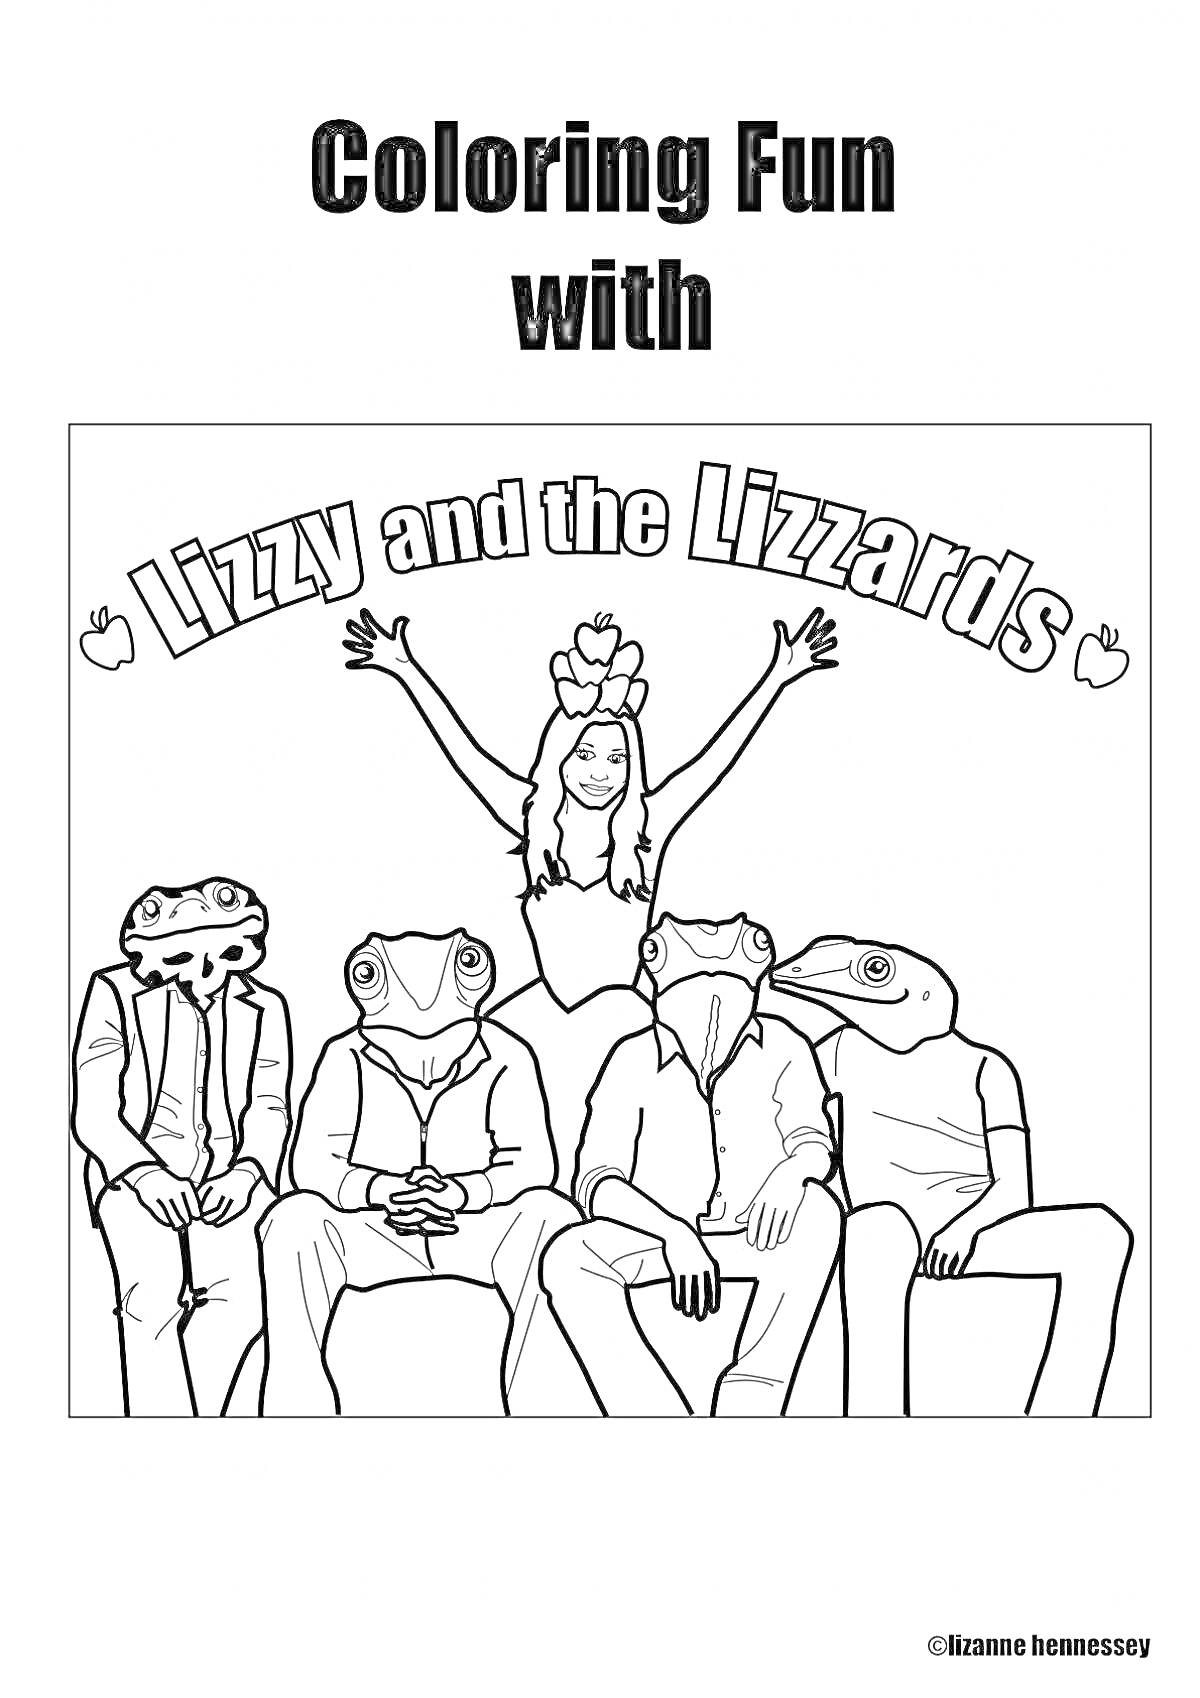 Раскраска Lizzy and the Lizzards с леди и четырьмя ящерицами на диване